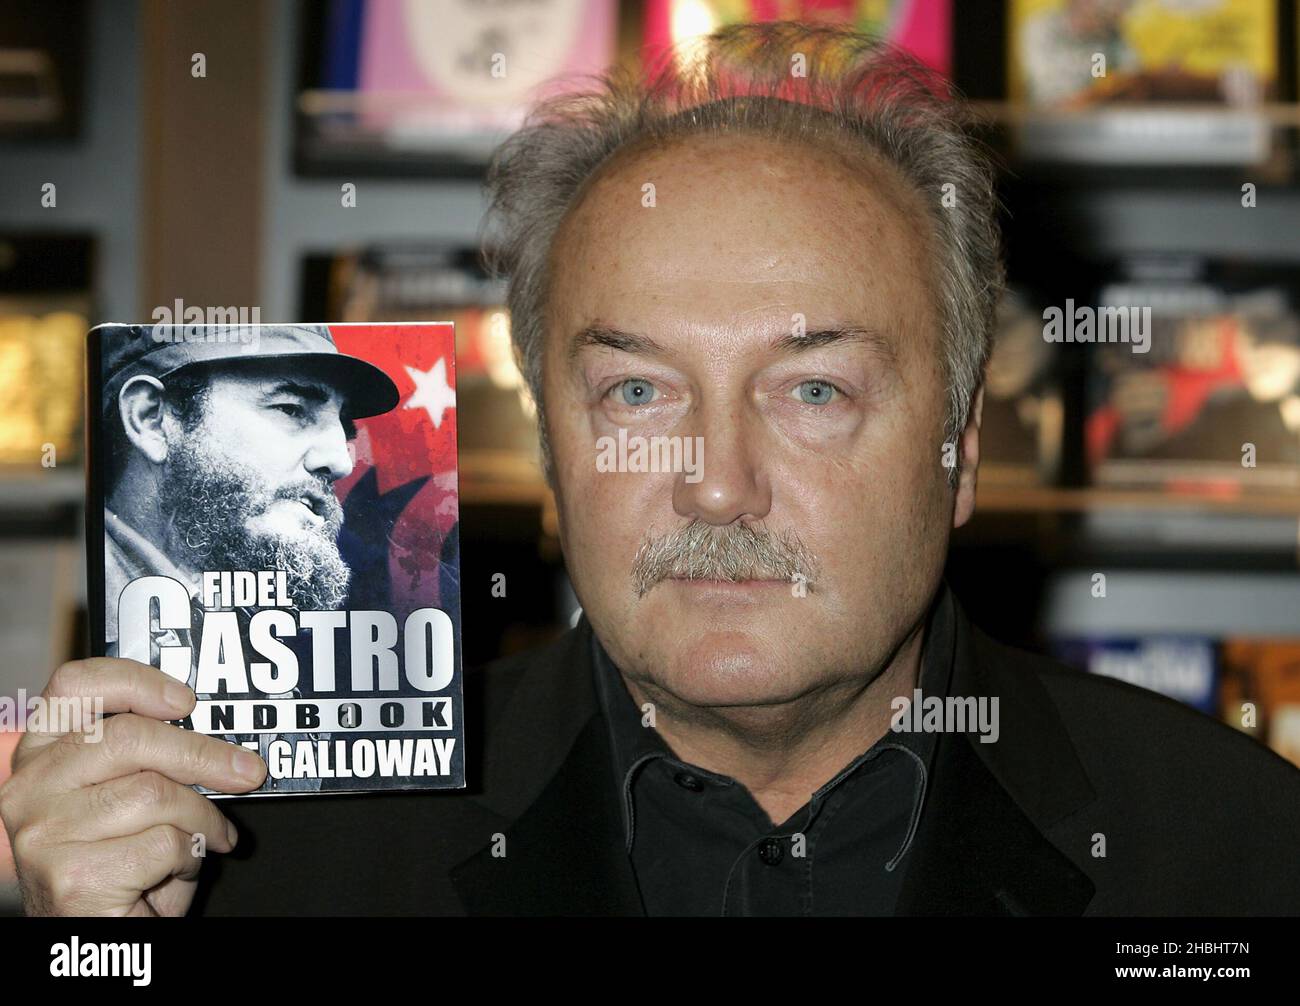 Le député de respect George Galloway fait la promotion de la publication de Fidel Castro sur la révolution cubaine et l'homme qui l'appuie, au salon du livre de Londres à Excel à Londres. Banque D'Images